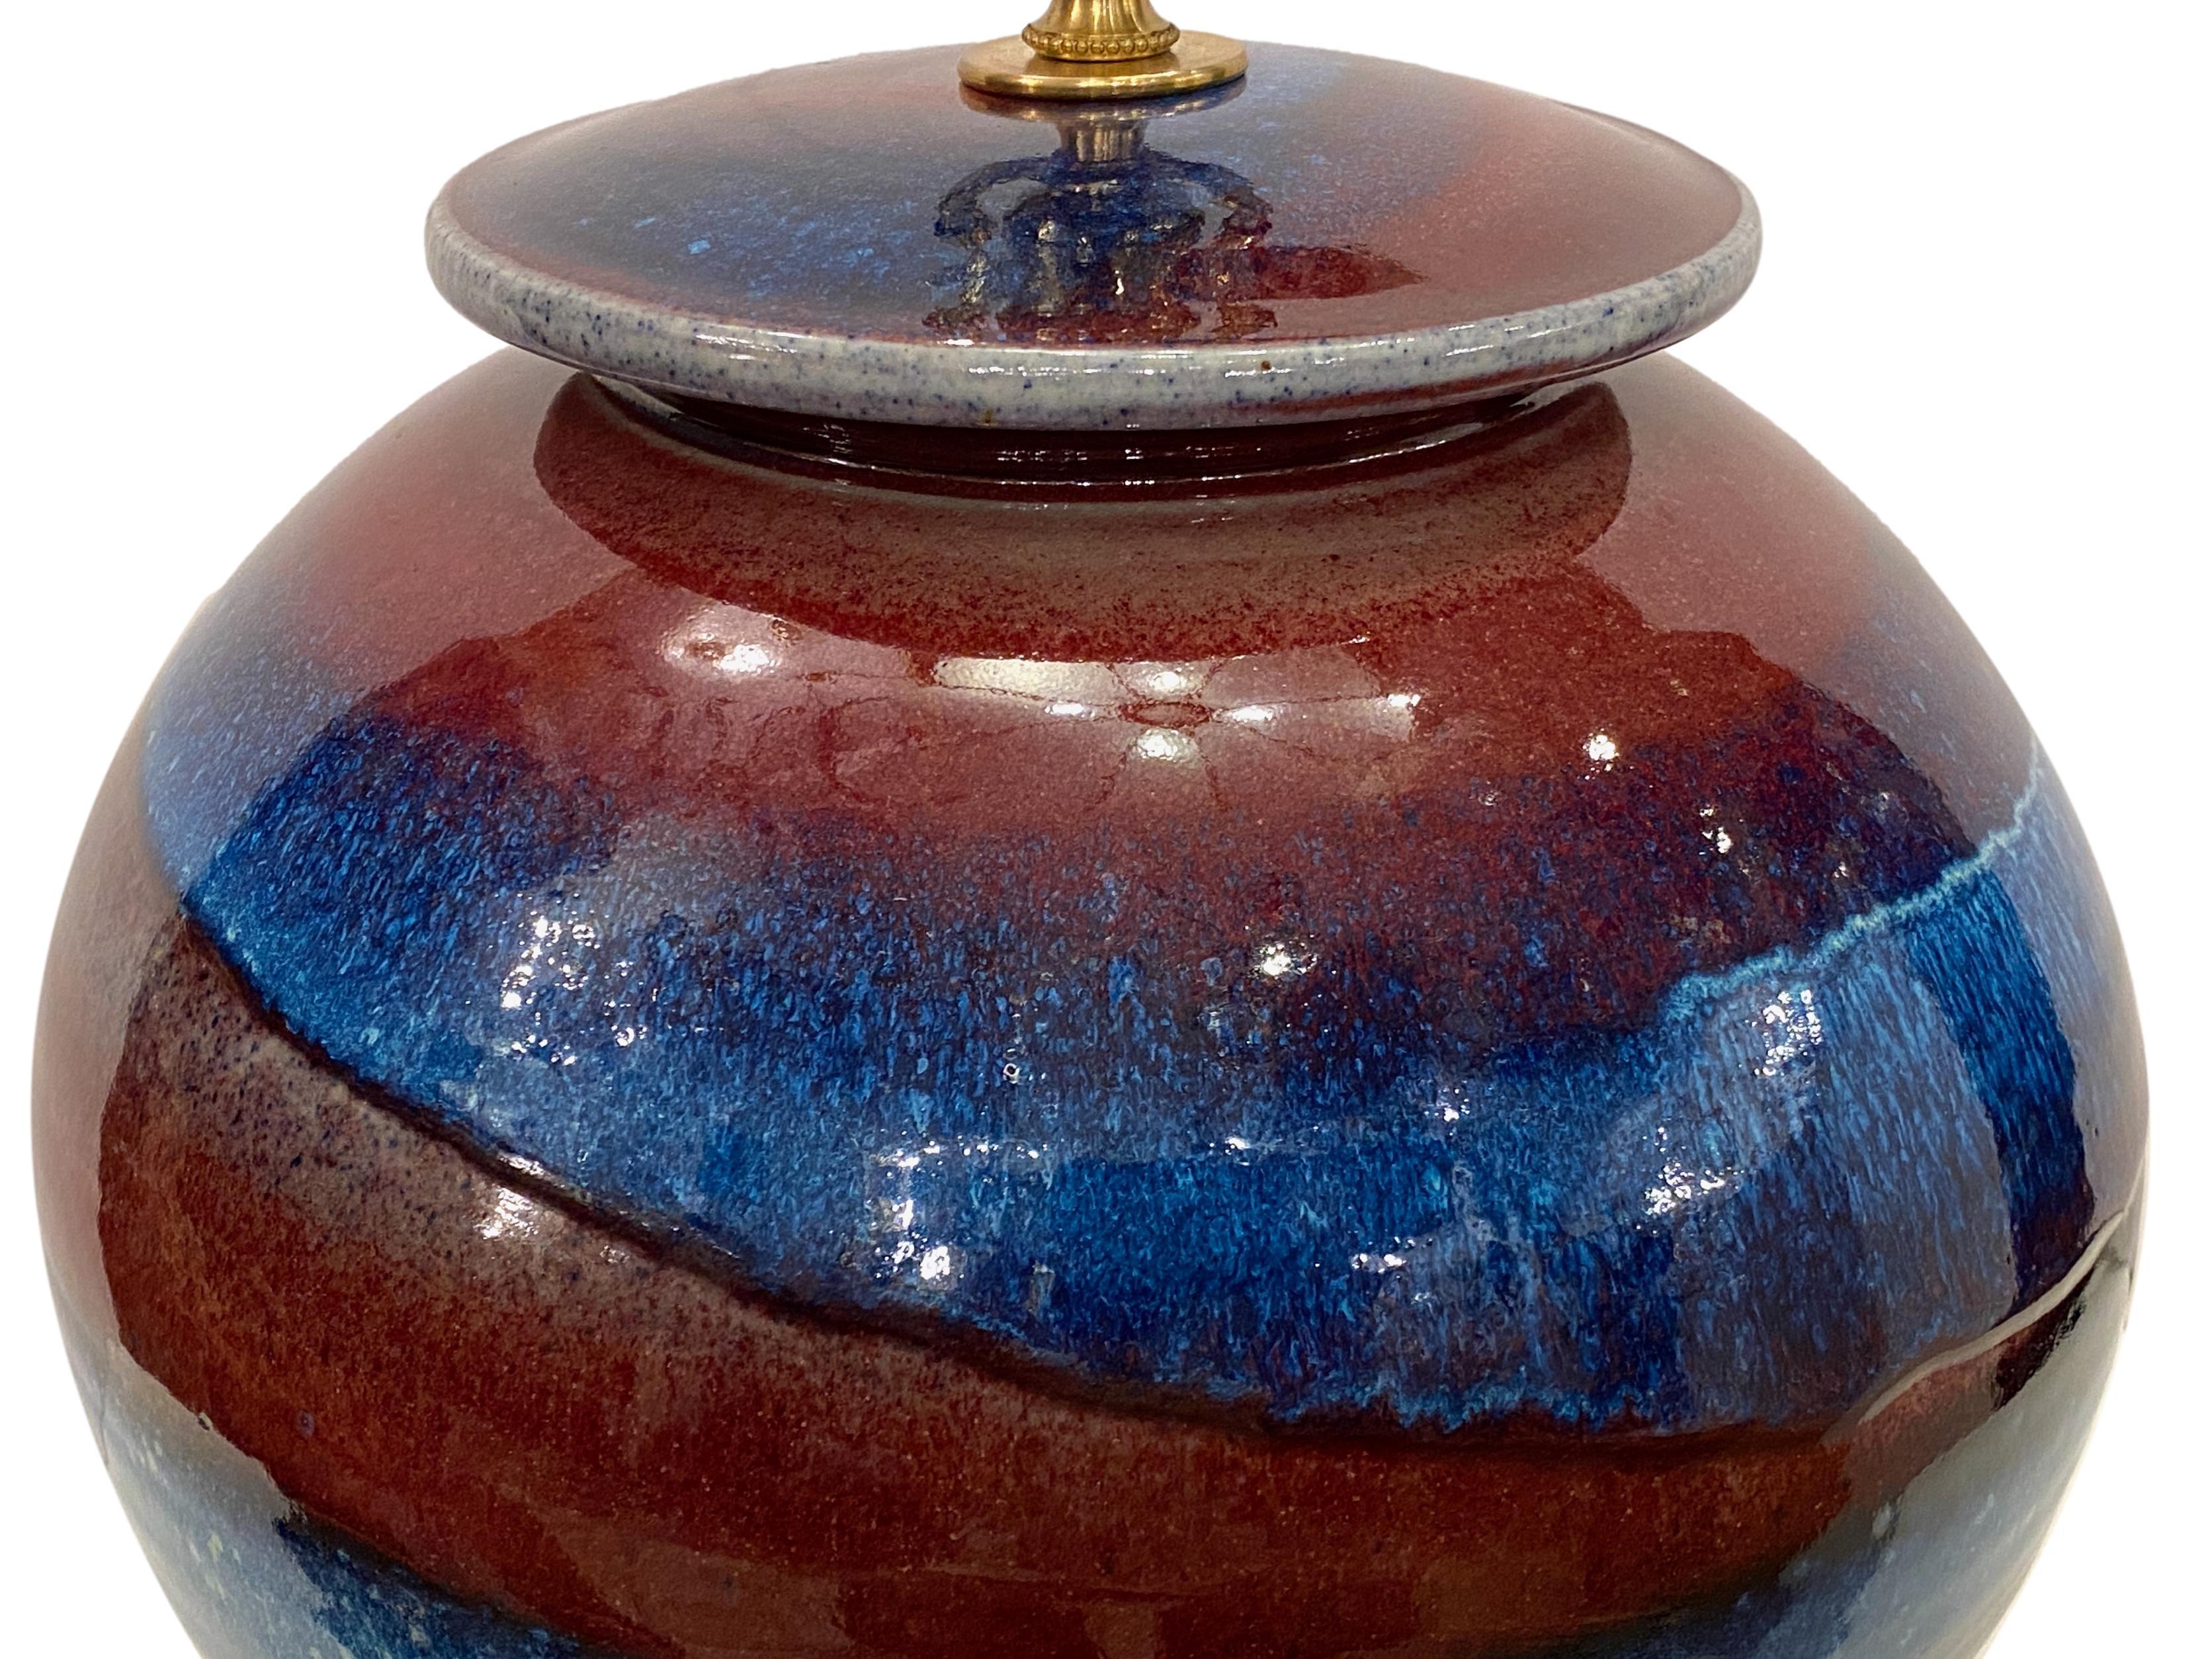 Eine einzelne italienische, glasierte Keramik-Tischlampe aus den 1960er Jahren.

Abmessungen:
Höhe des Körpers: 15